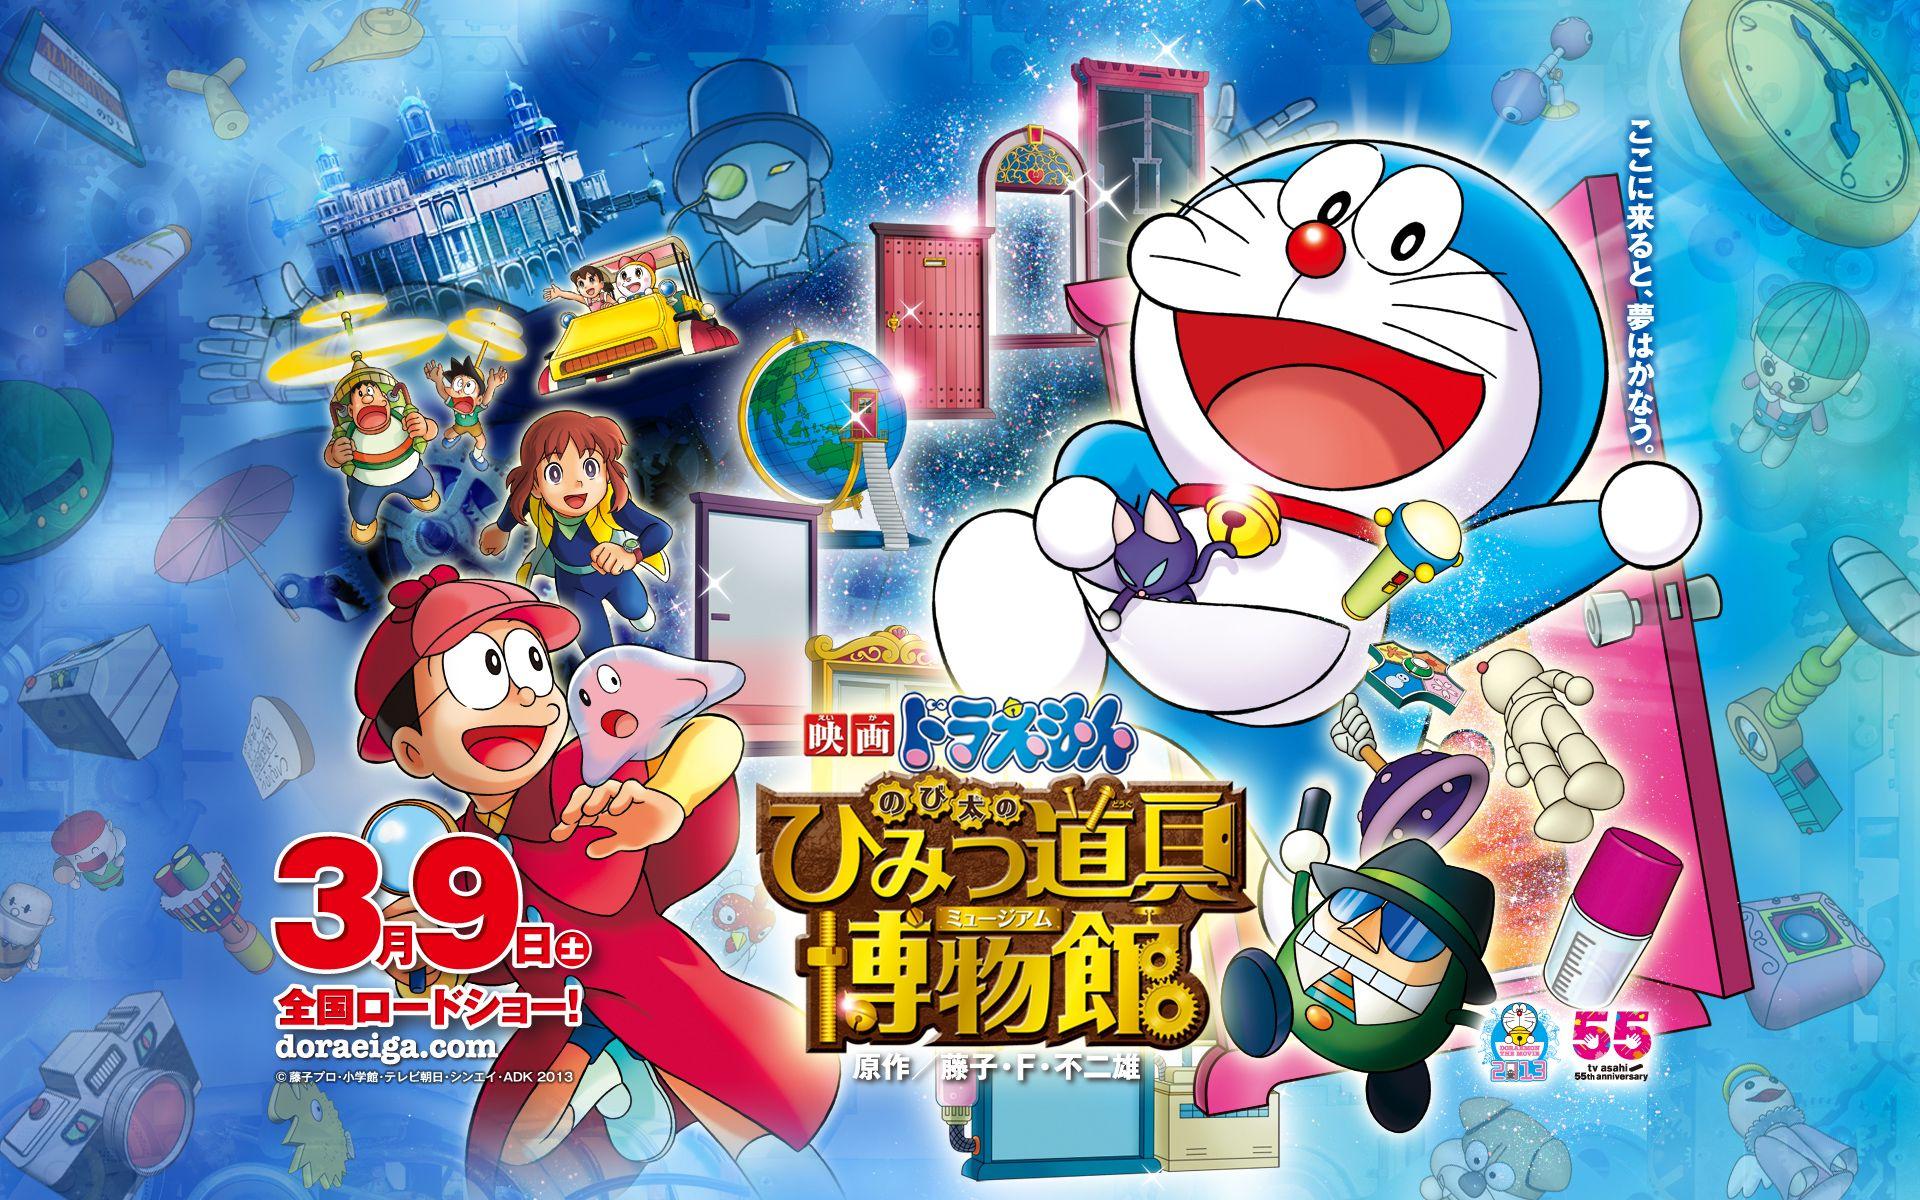 Doraemon the Movie: Nobita's Secret Gadget Museum